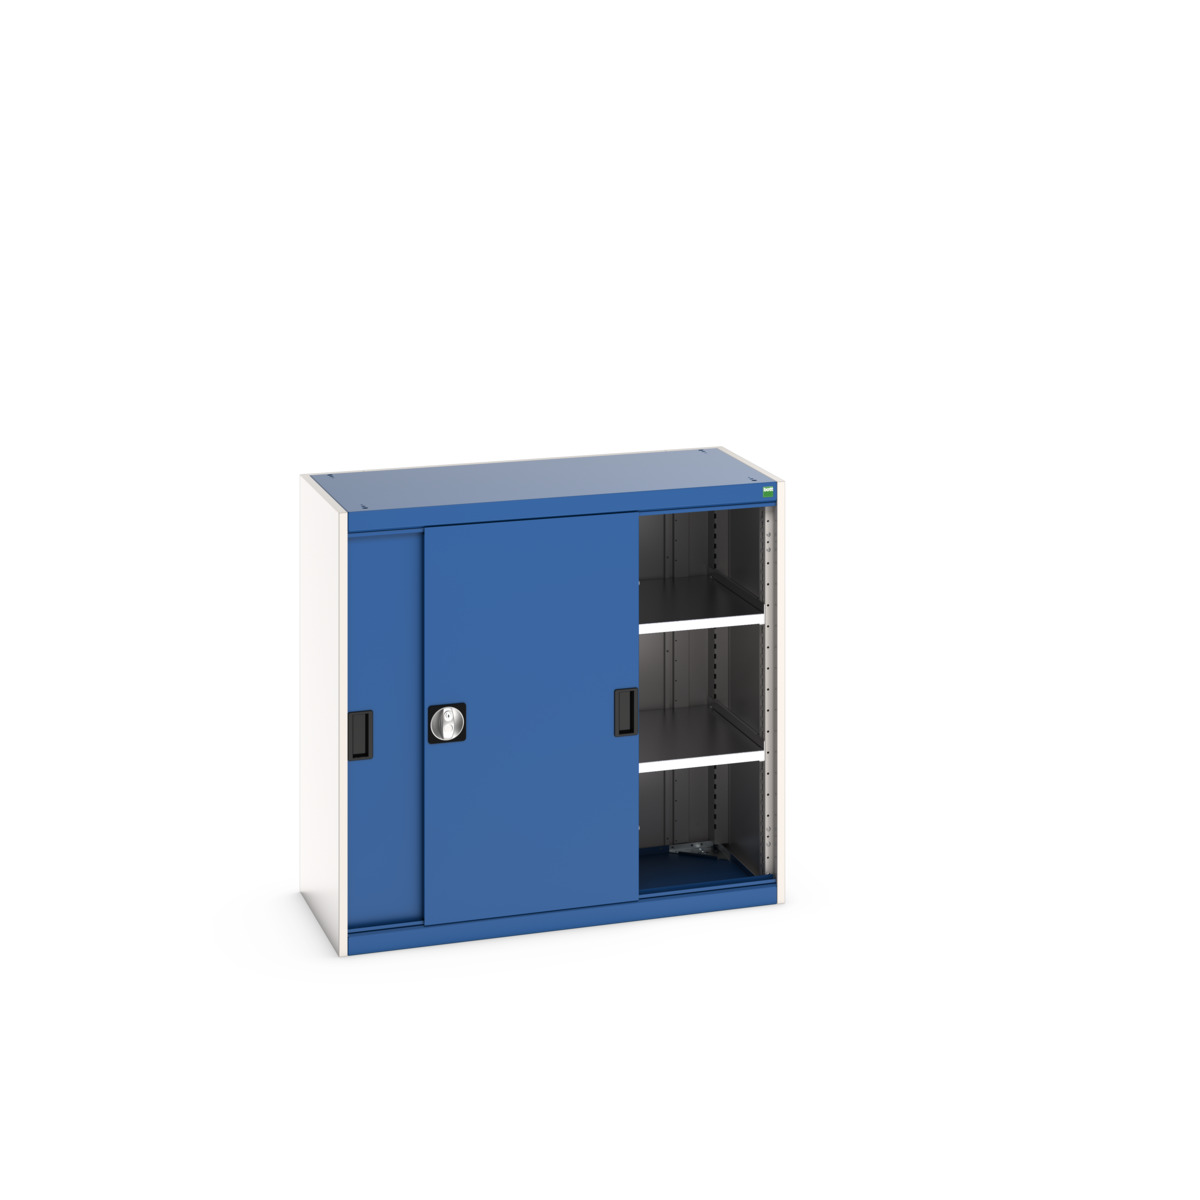 40013068.11V - cubio cupboard